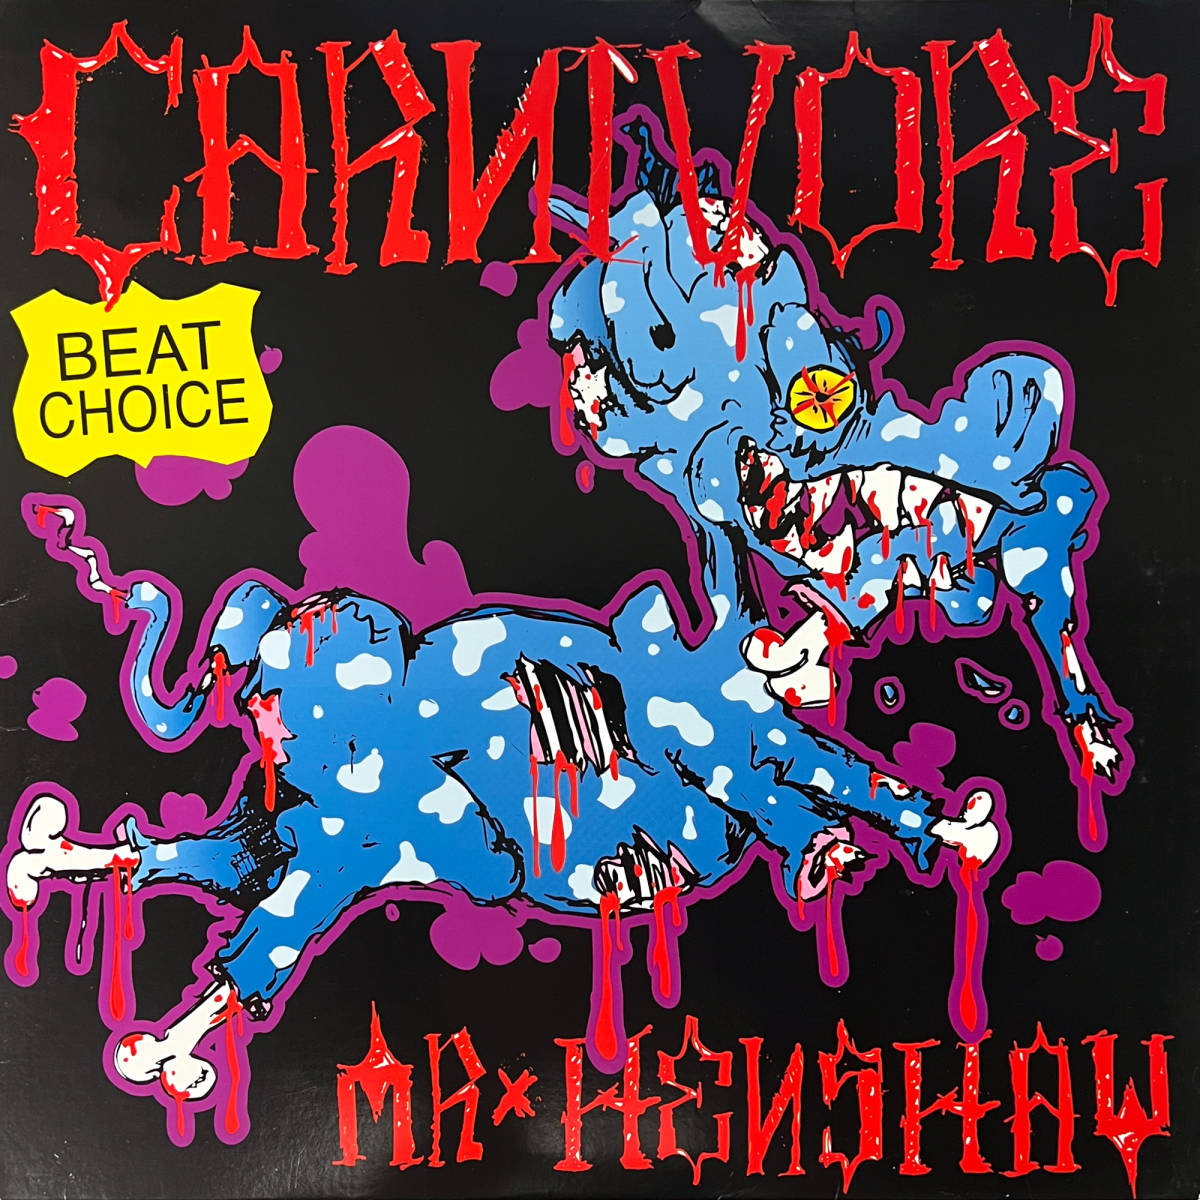 Mr. Henshaw - Carnivore レコード バトルブレイクス 希少テストプレス盤_画像1